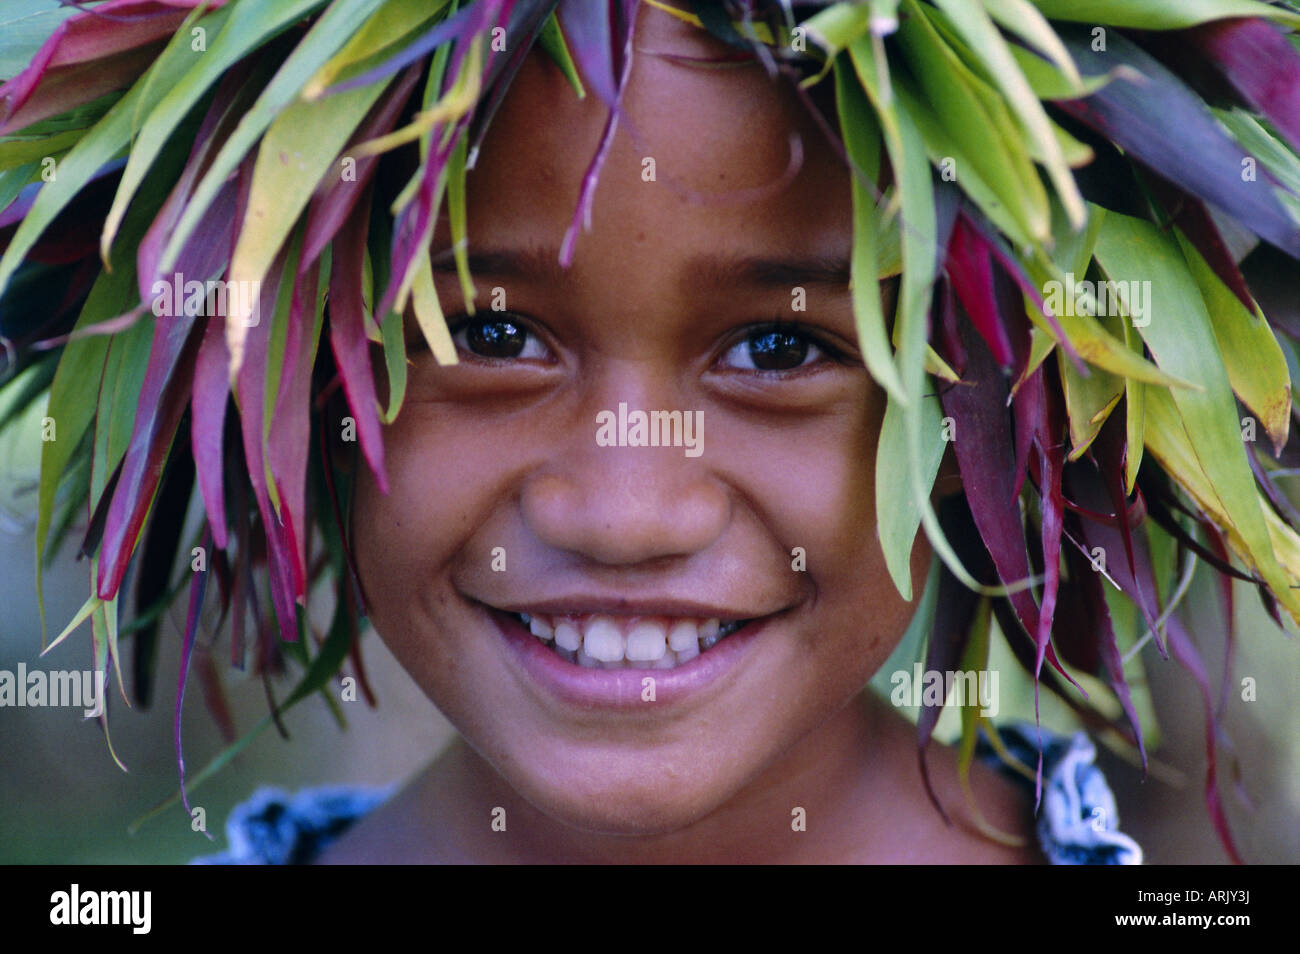 Retrato de un joven muchacho, Atiheu Bay, Nuku Hiva isla, archipiélago de las Islas Marquesas, en la Polinesia Francesa, Islas del Pacífico Sur. Foto de stock